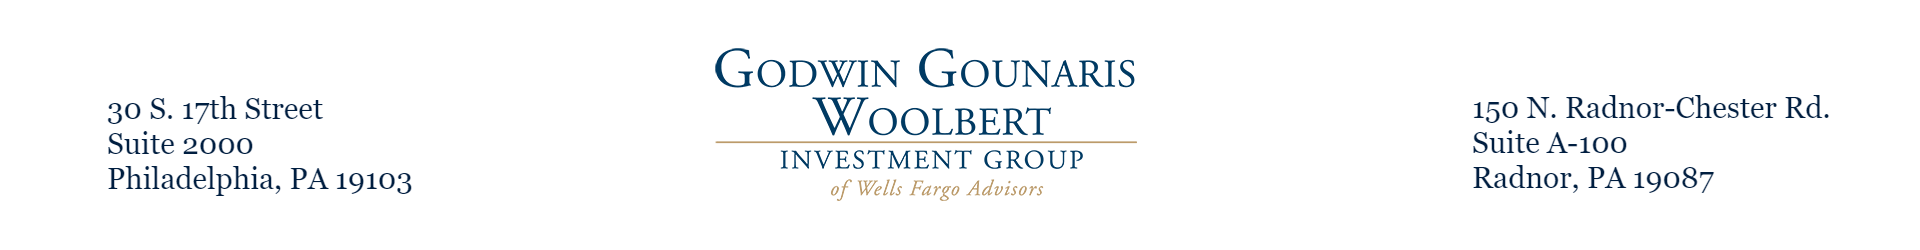 Godwin Gounaris Woolbert Investment Group